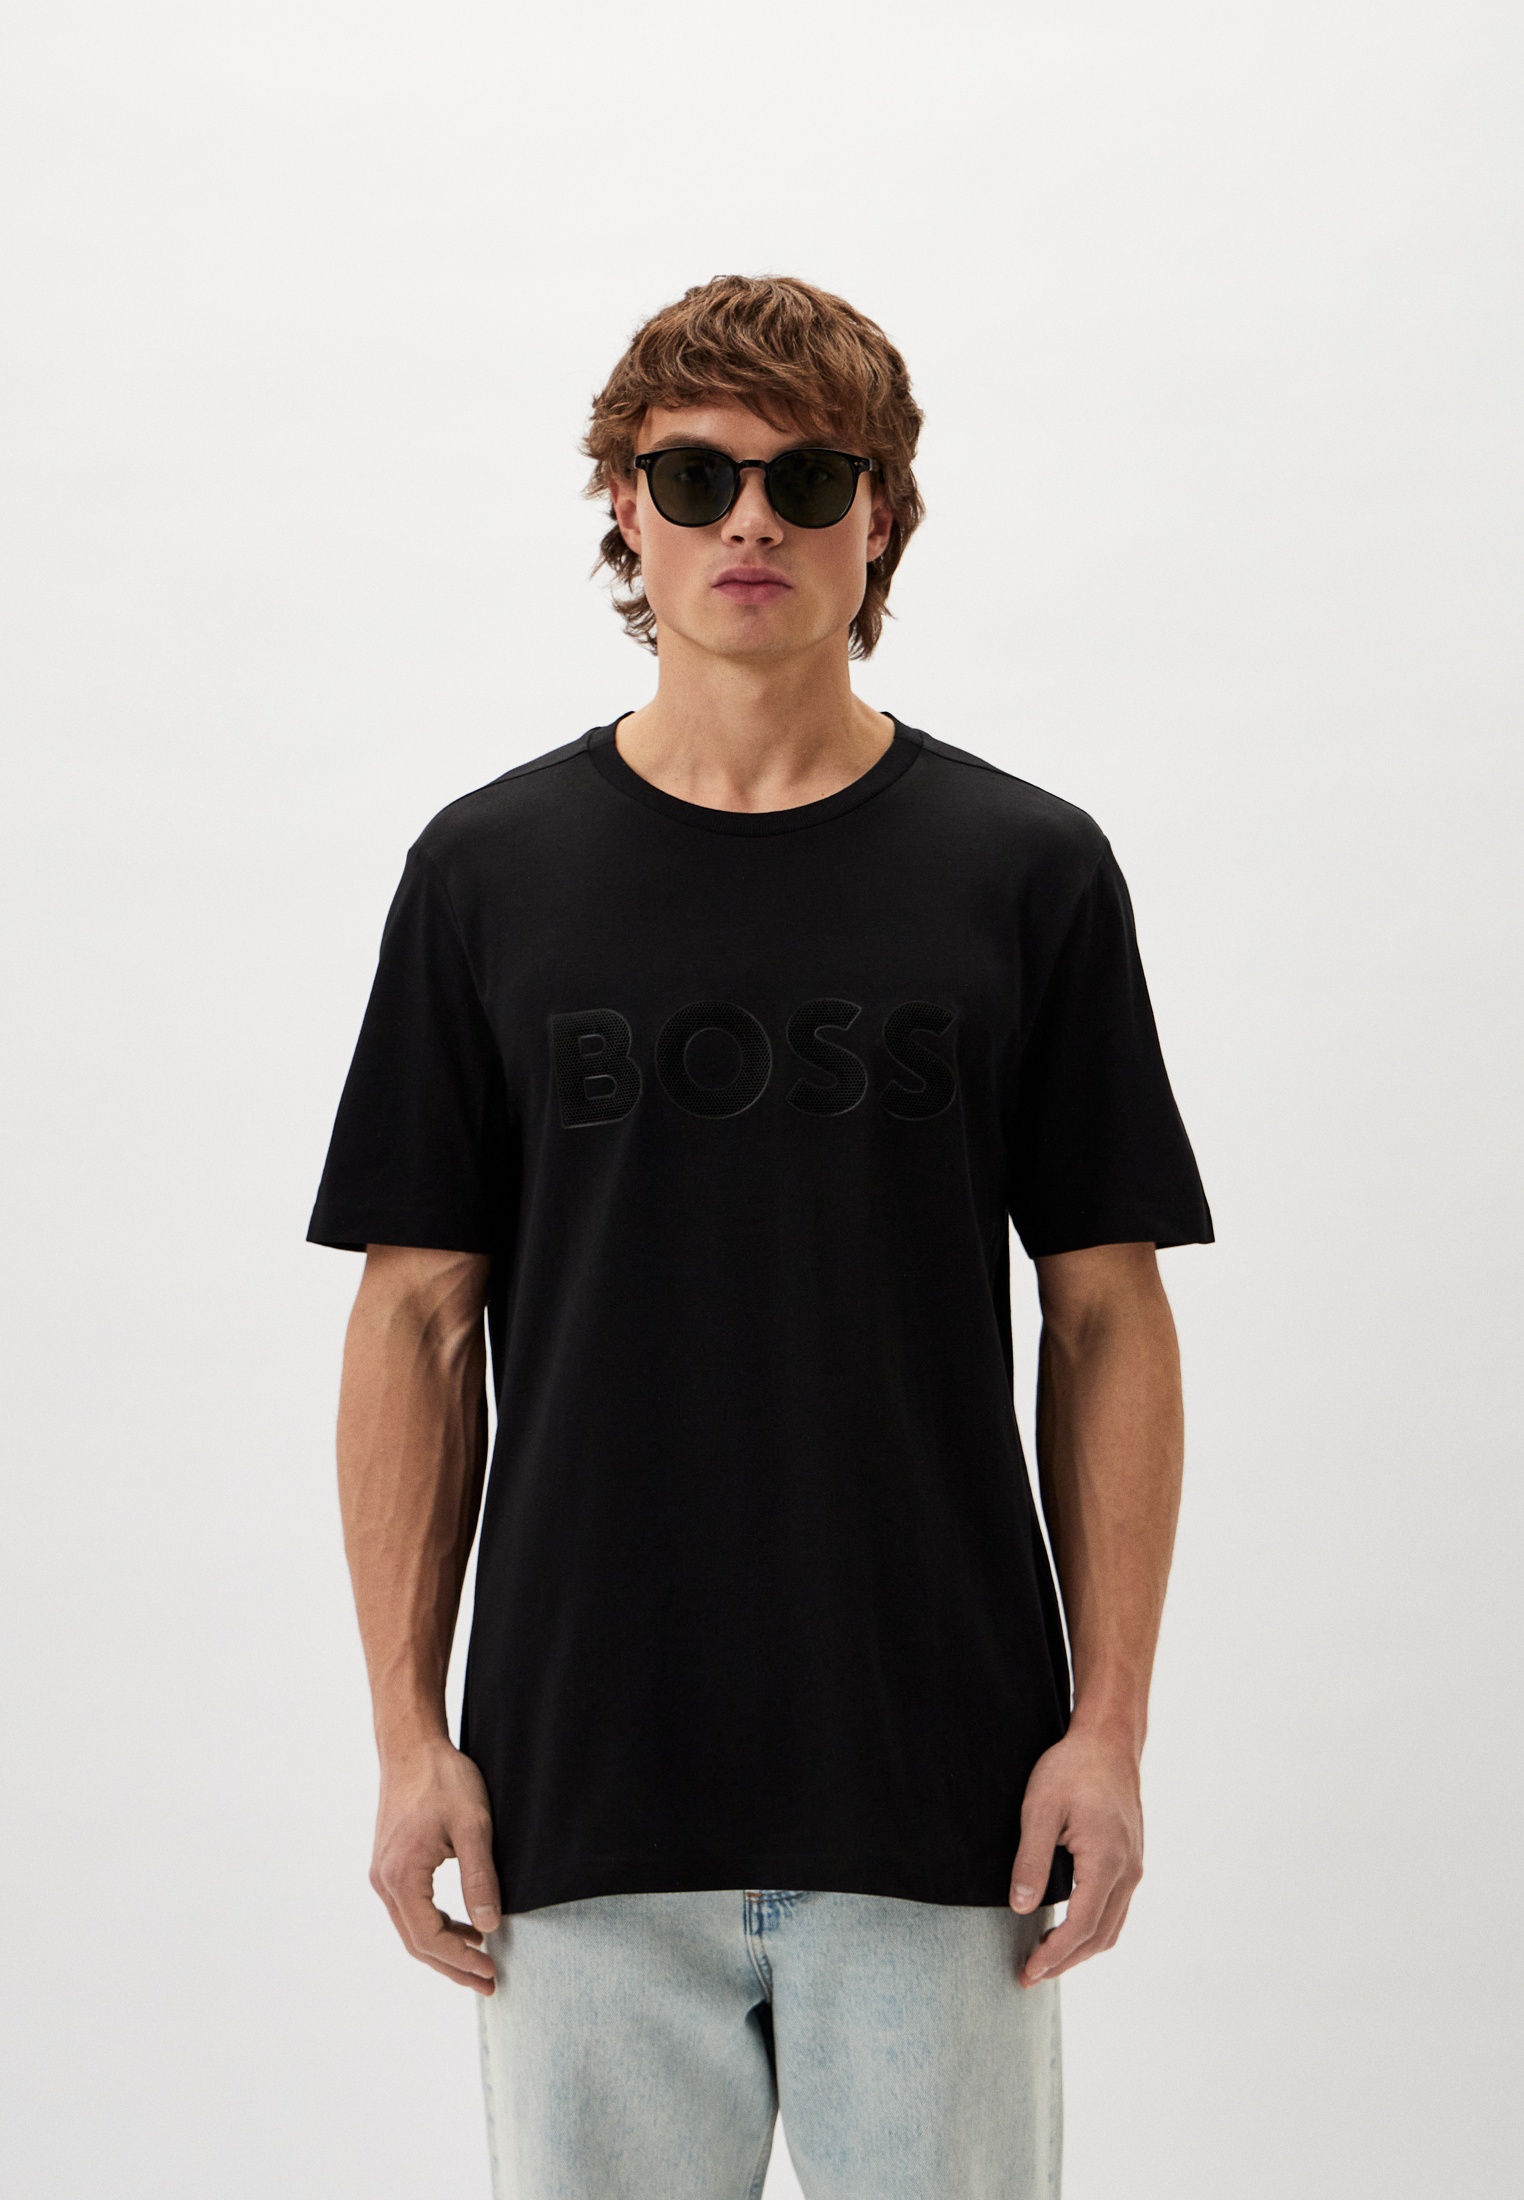 Мужская футболка Boss (Босс) 50512866: изображение 1